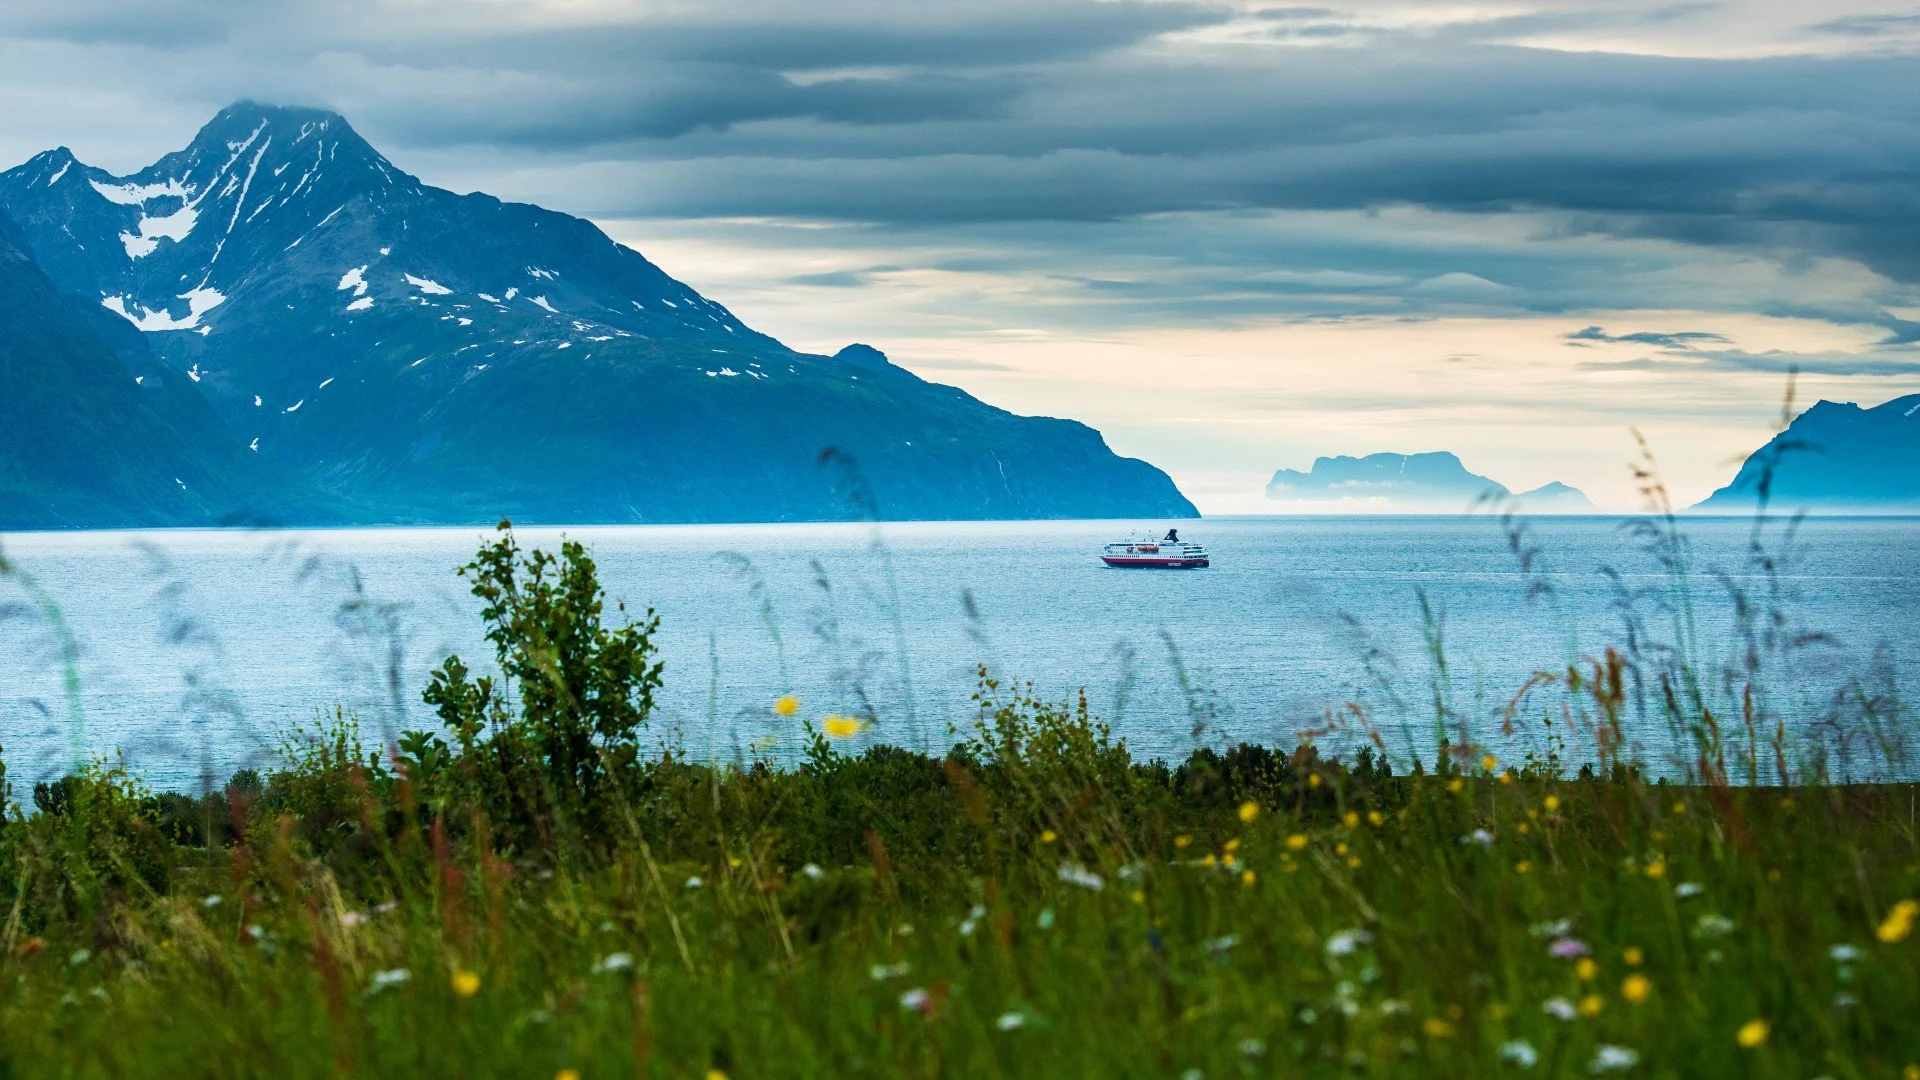 MS Nordnorge navigue dans le Lyngenfjord, une chaîne de montagnes située dans le nord de la Norvège.